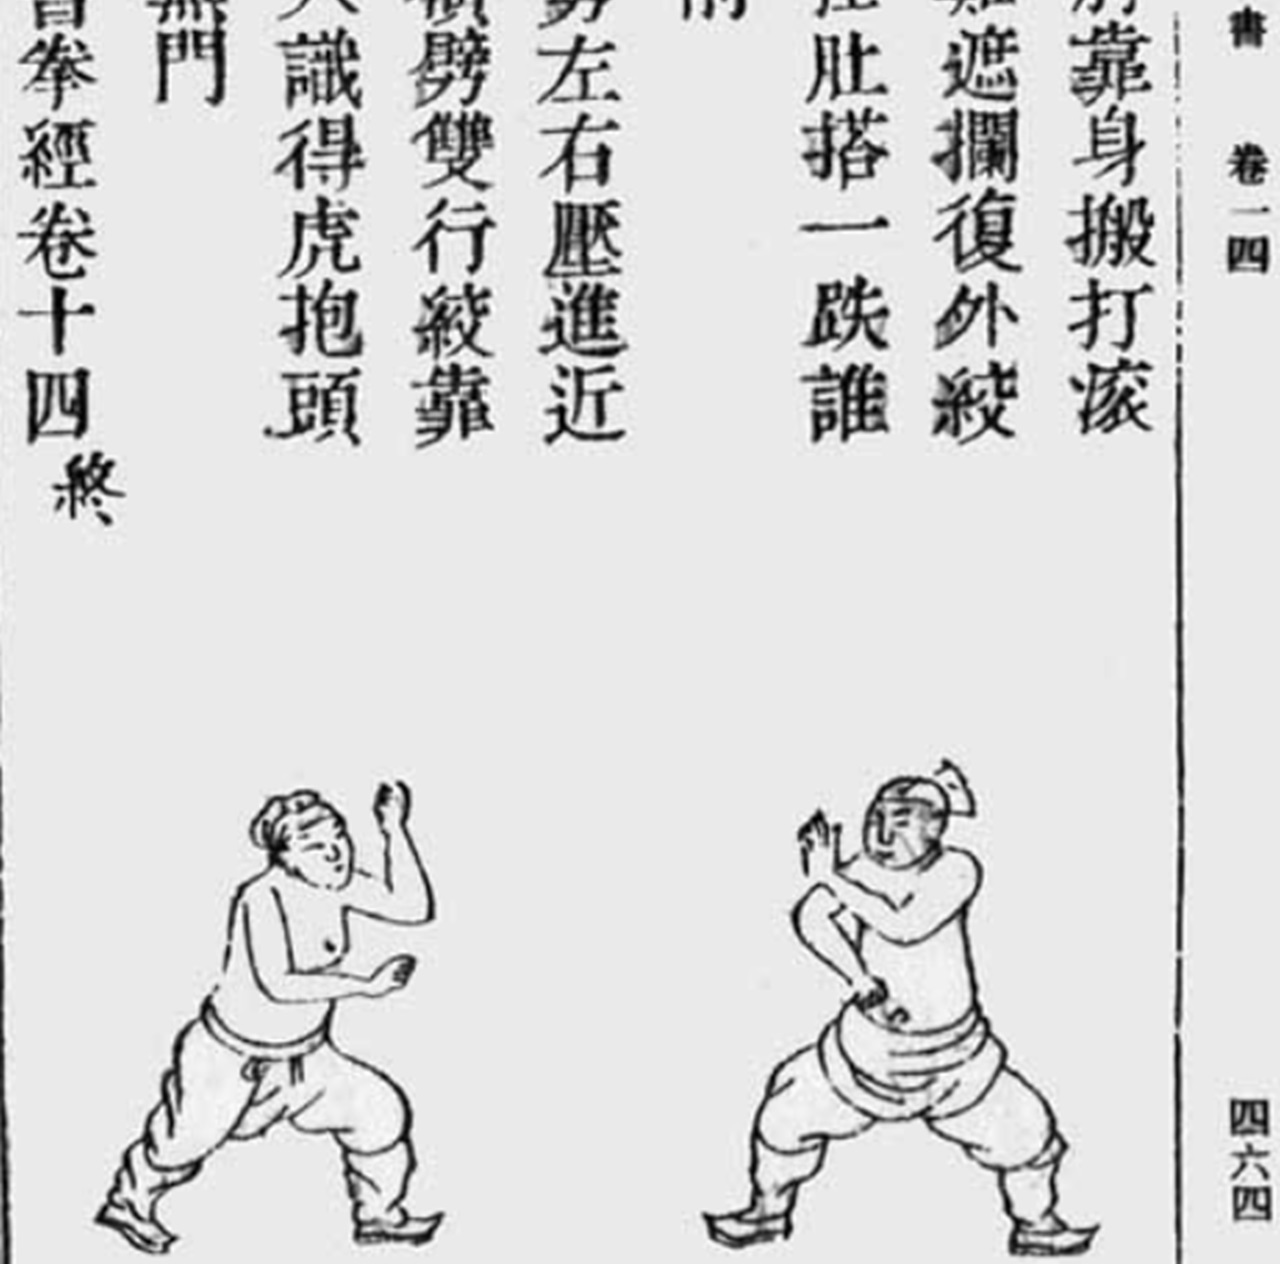 Kung fu pagina Nuovo trattato sull'efficienza militare